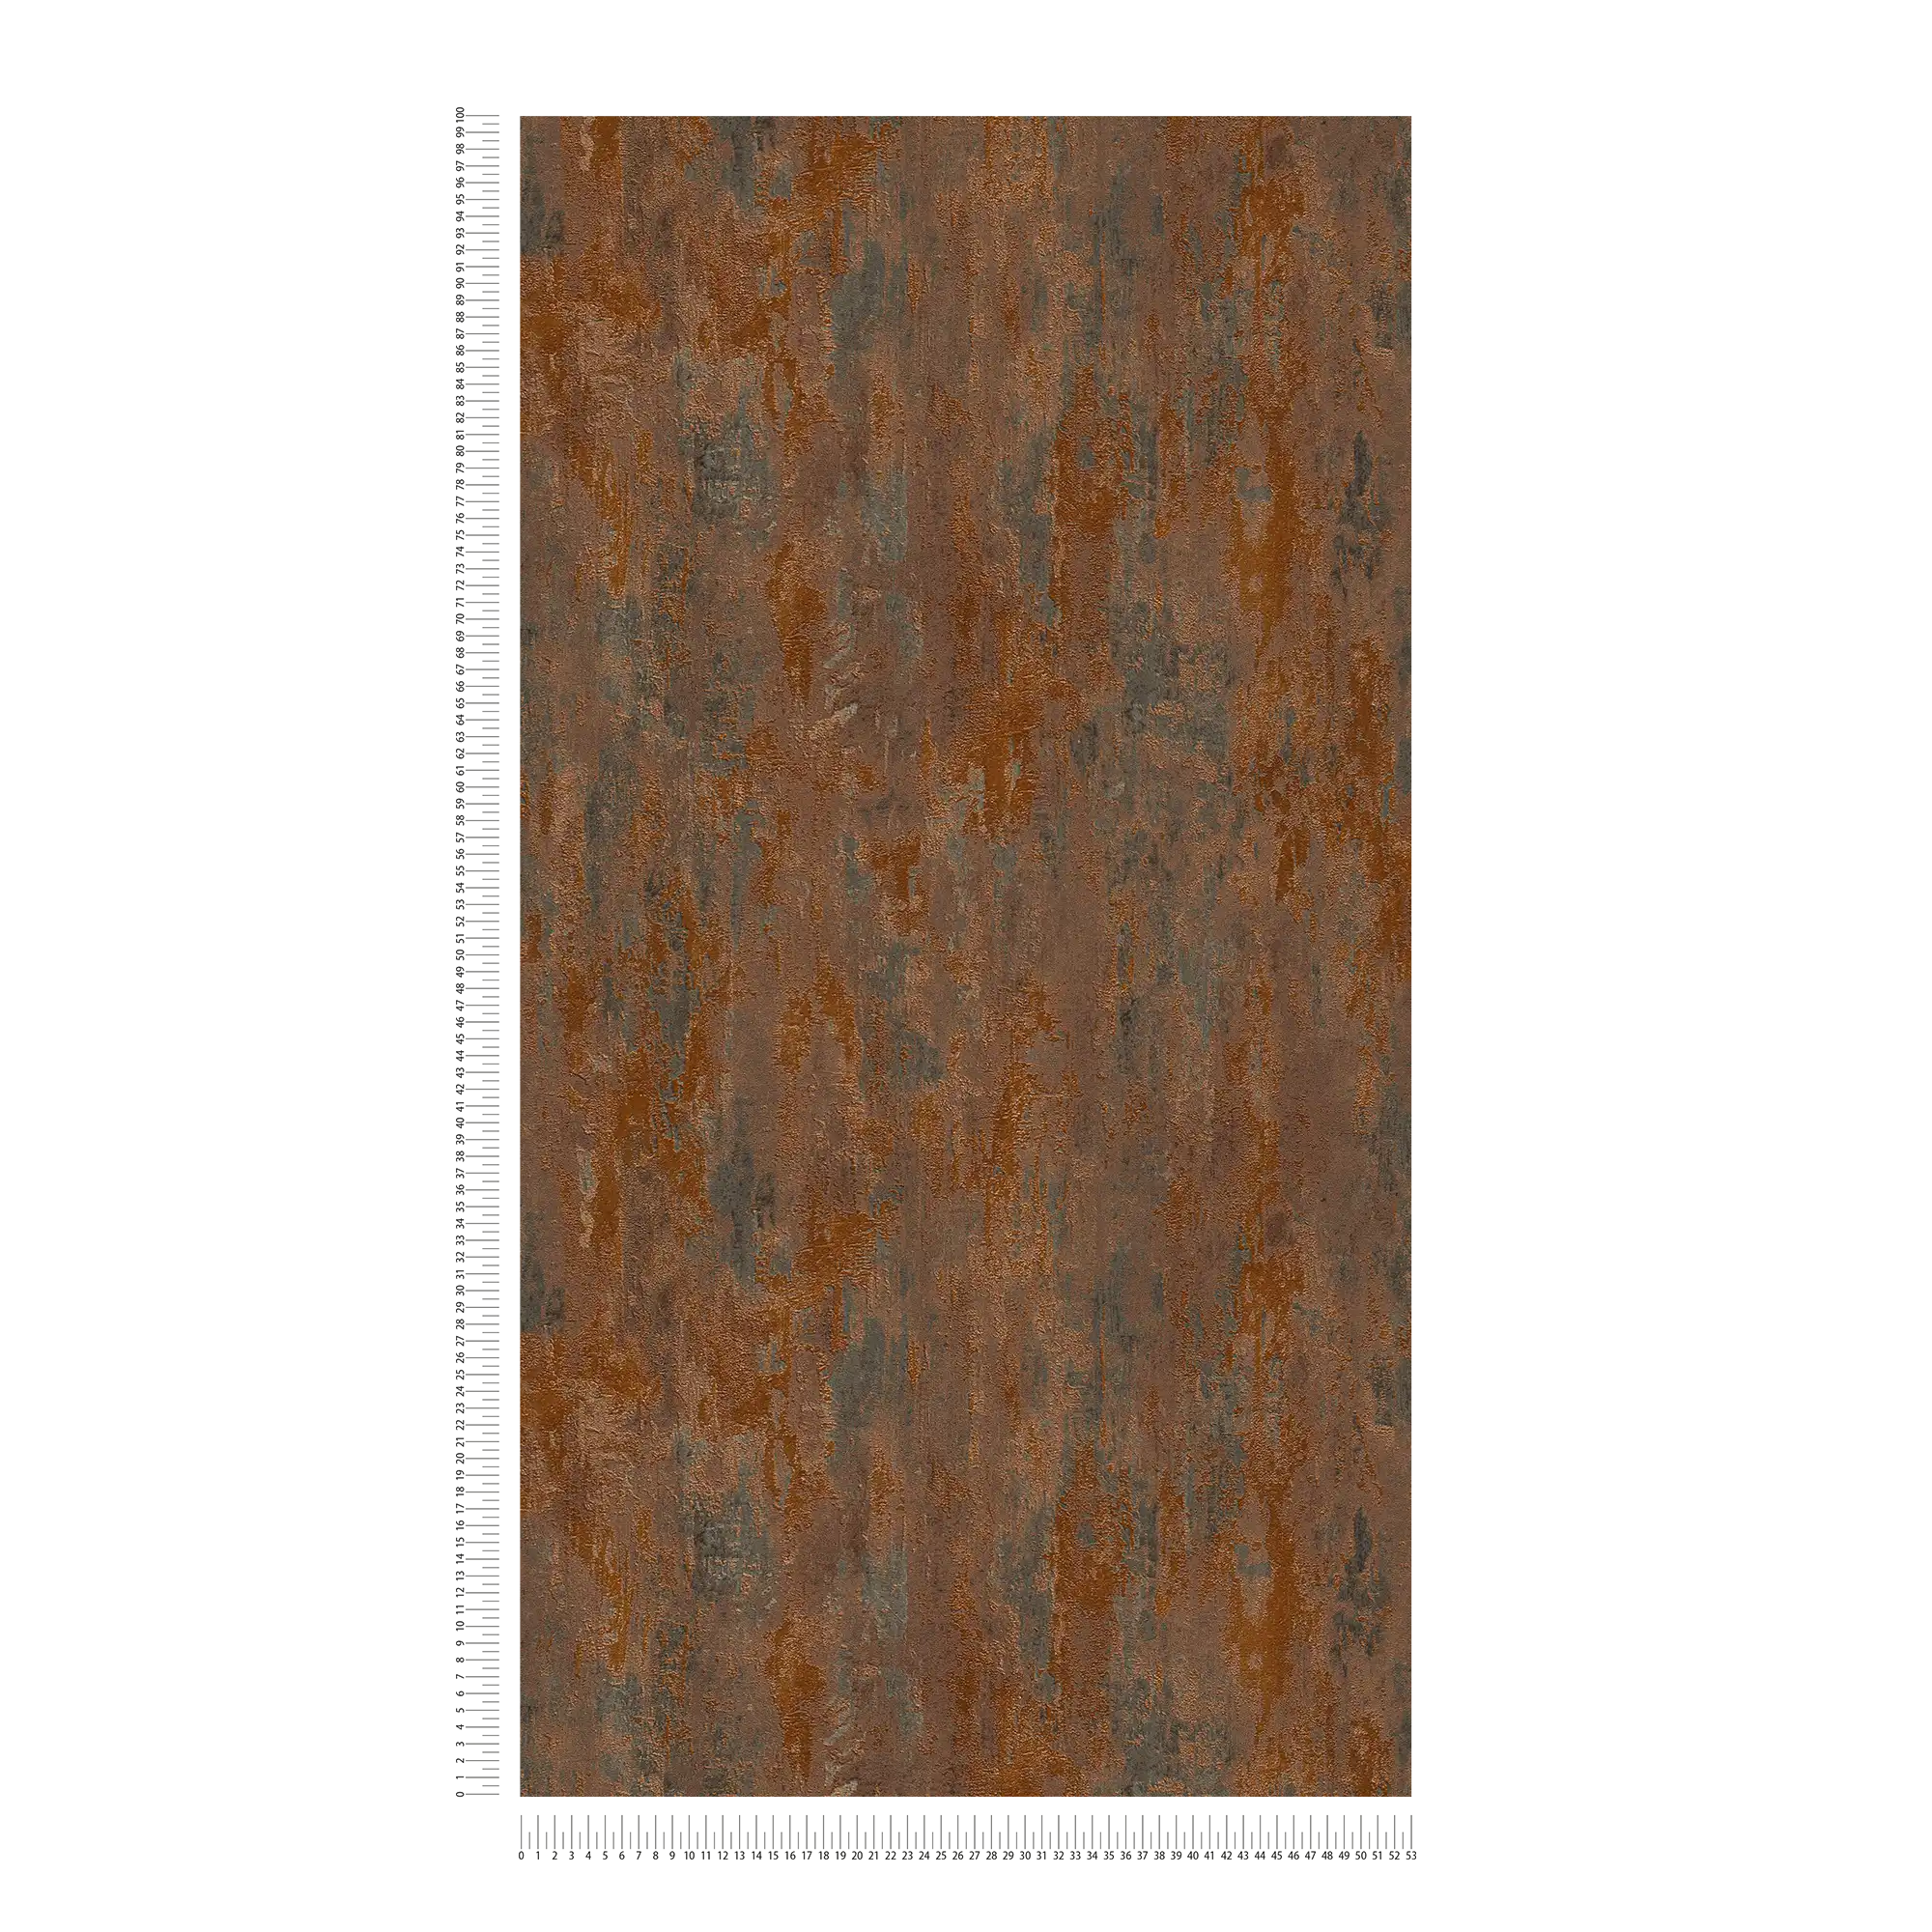             Carta da parati effetto ruggine e metallizzato in stile industriale - arancio, rame, marrone
        